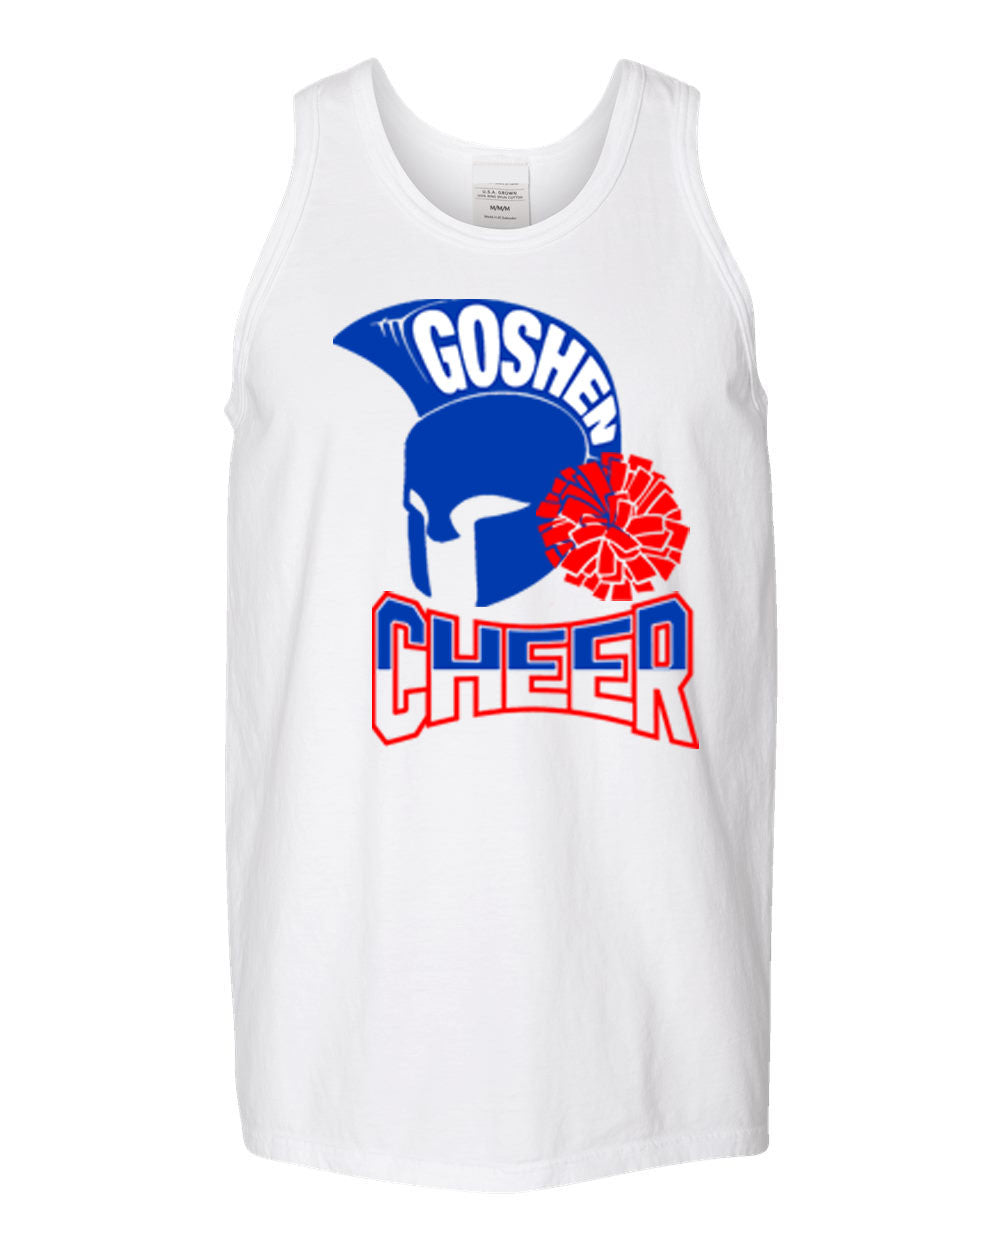 Goshen Cheer design 8 Muscle Tank Top